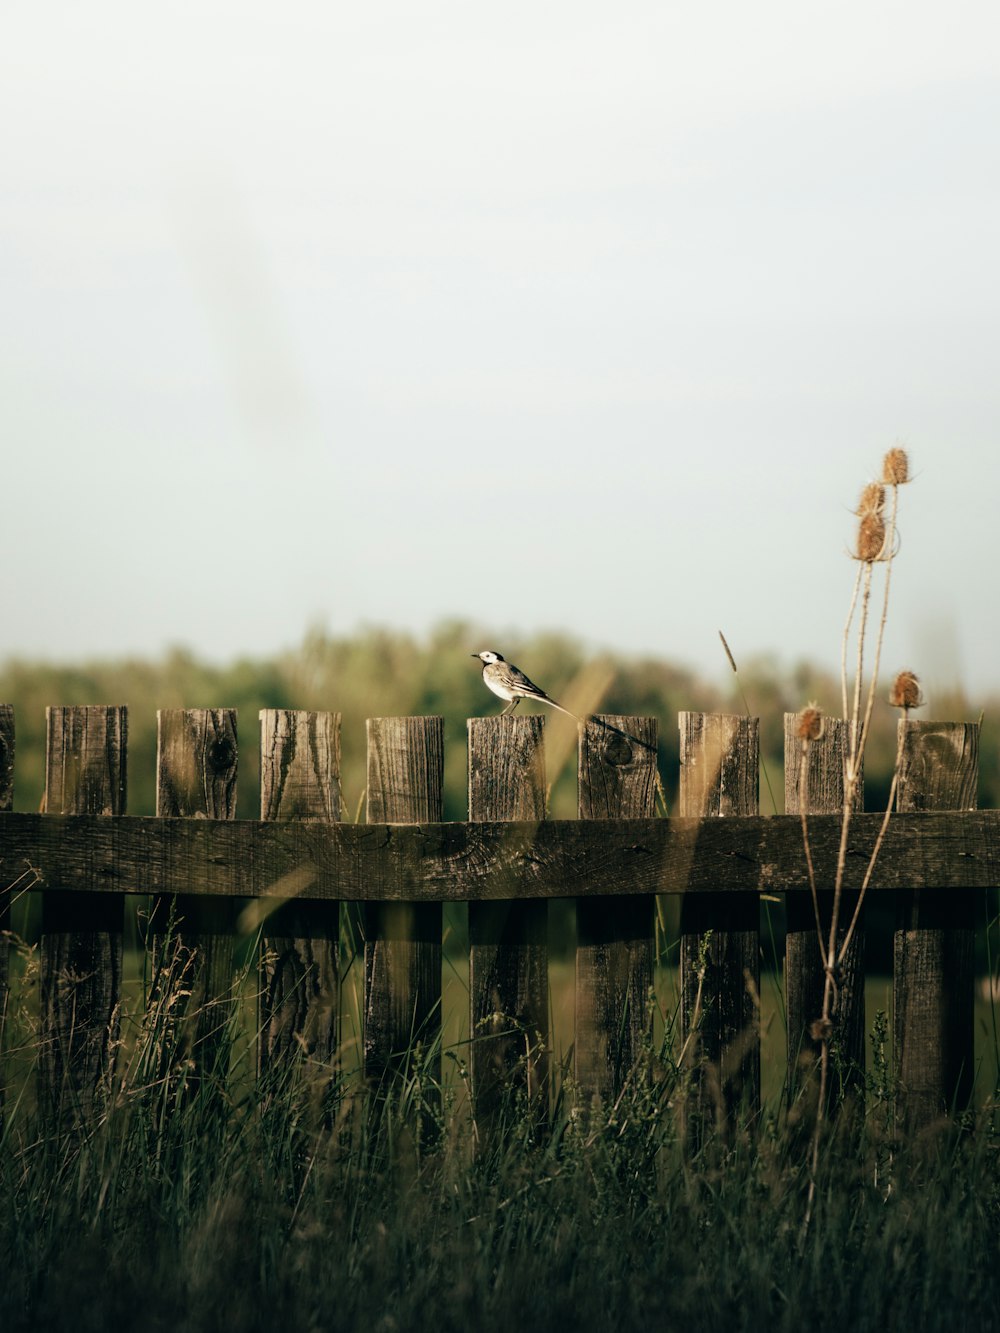 a bird on a fence